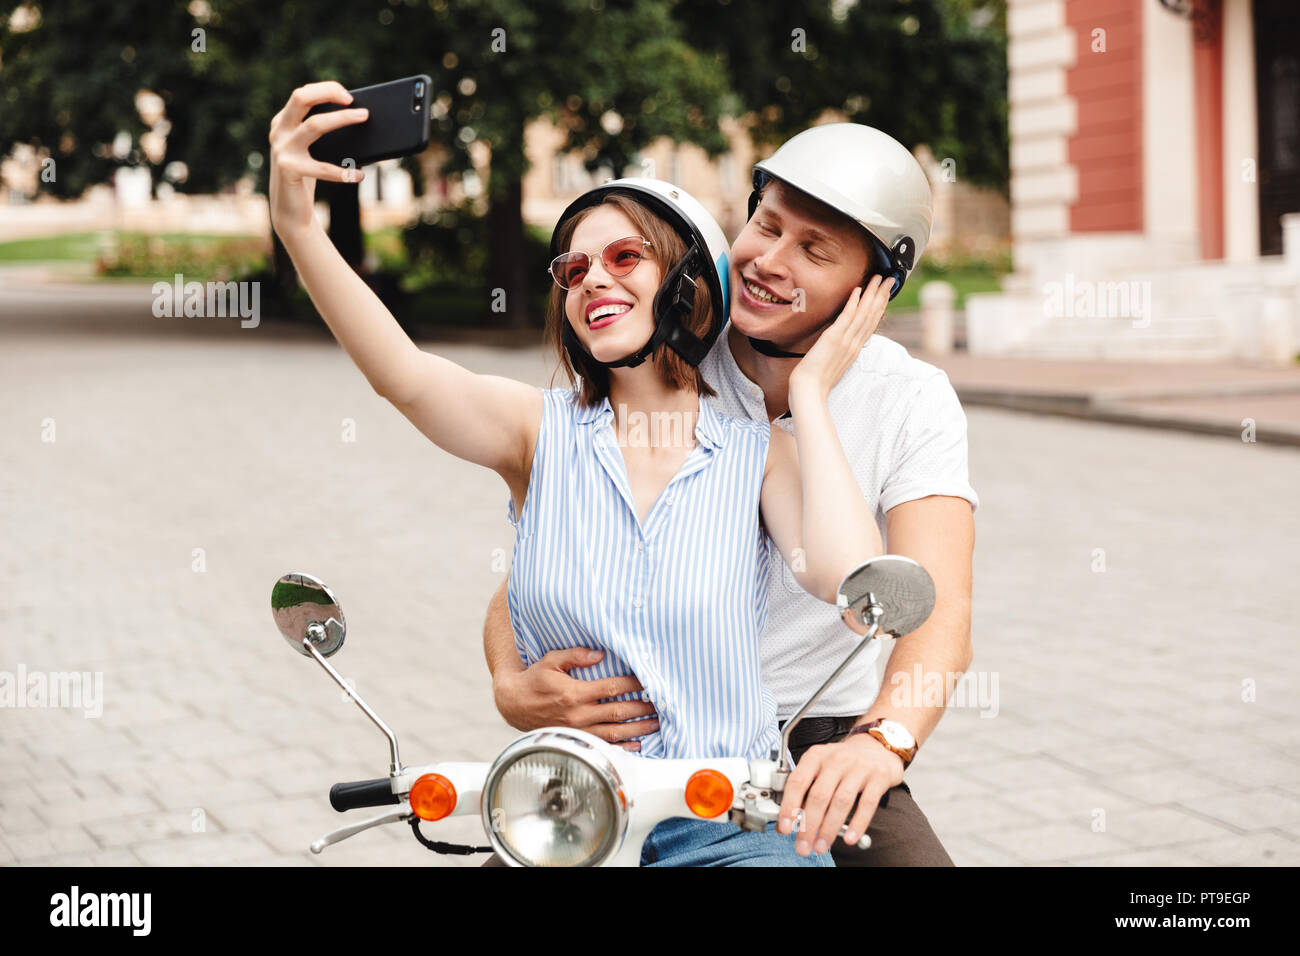 Glückliches junges Paar in Sturzhelme machen selfie auf dem Smartphone beim zusammen sitzen auf Roller im Freien Stockfoto